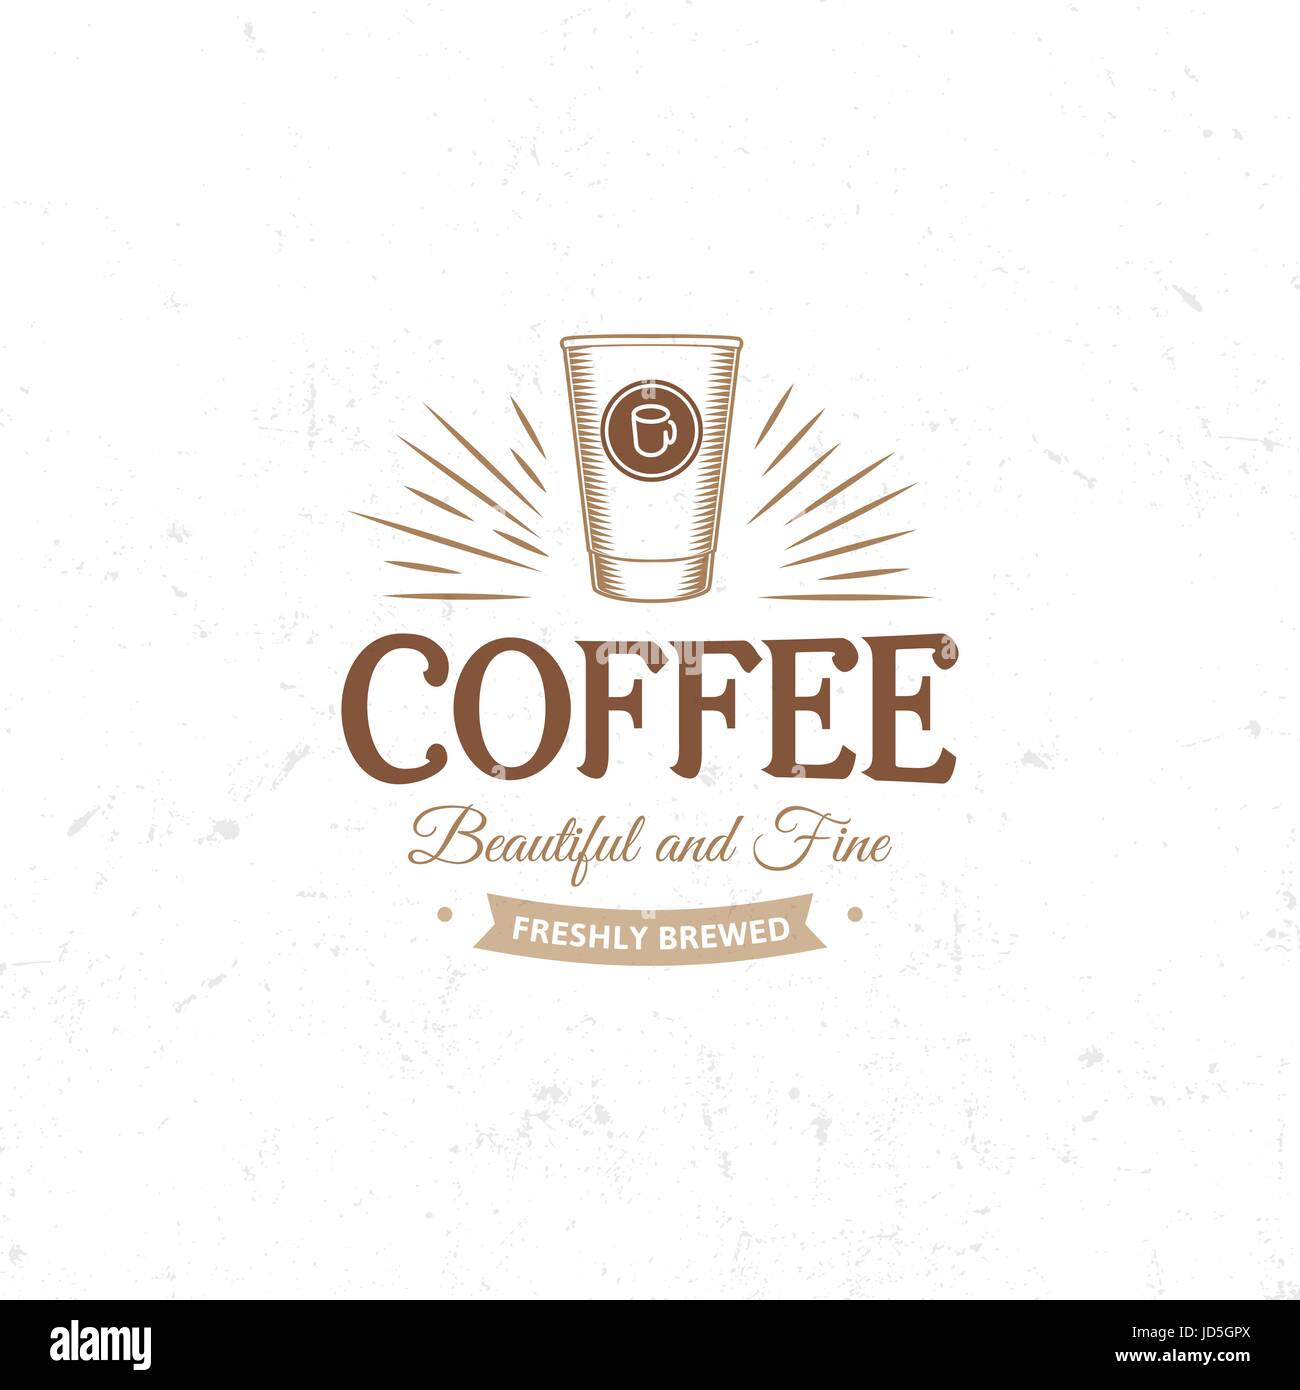 Vintage dunkel Kaffee Emblem, flach Retro-Abbildung. Braunen und Beige Farben zu unterzeichnen. Stilisierte Briefmarke des Vektors Schriftzug Getränk. Frühstück Café logo Stock Vektor